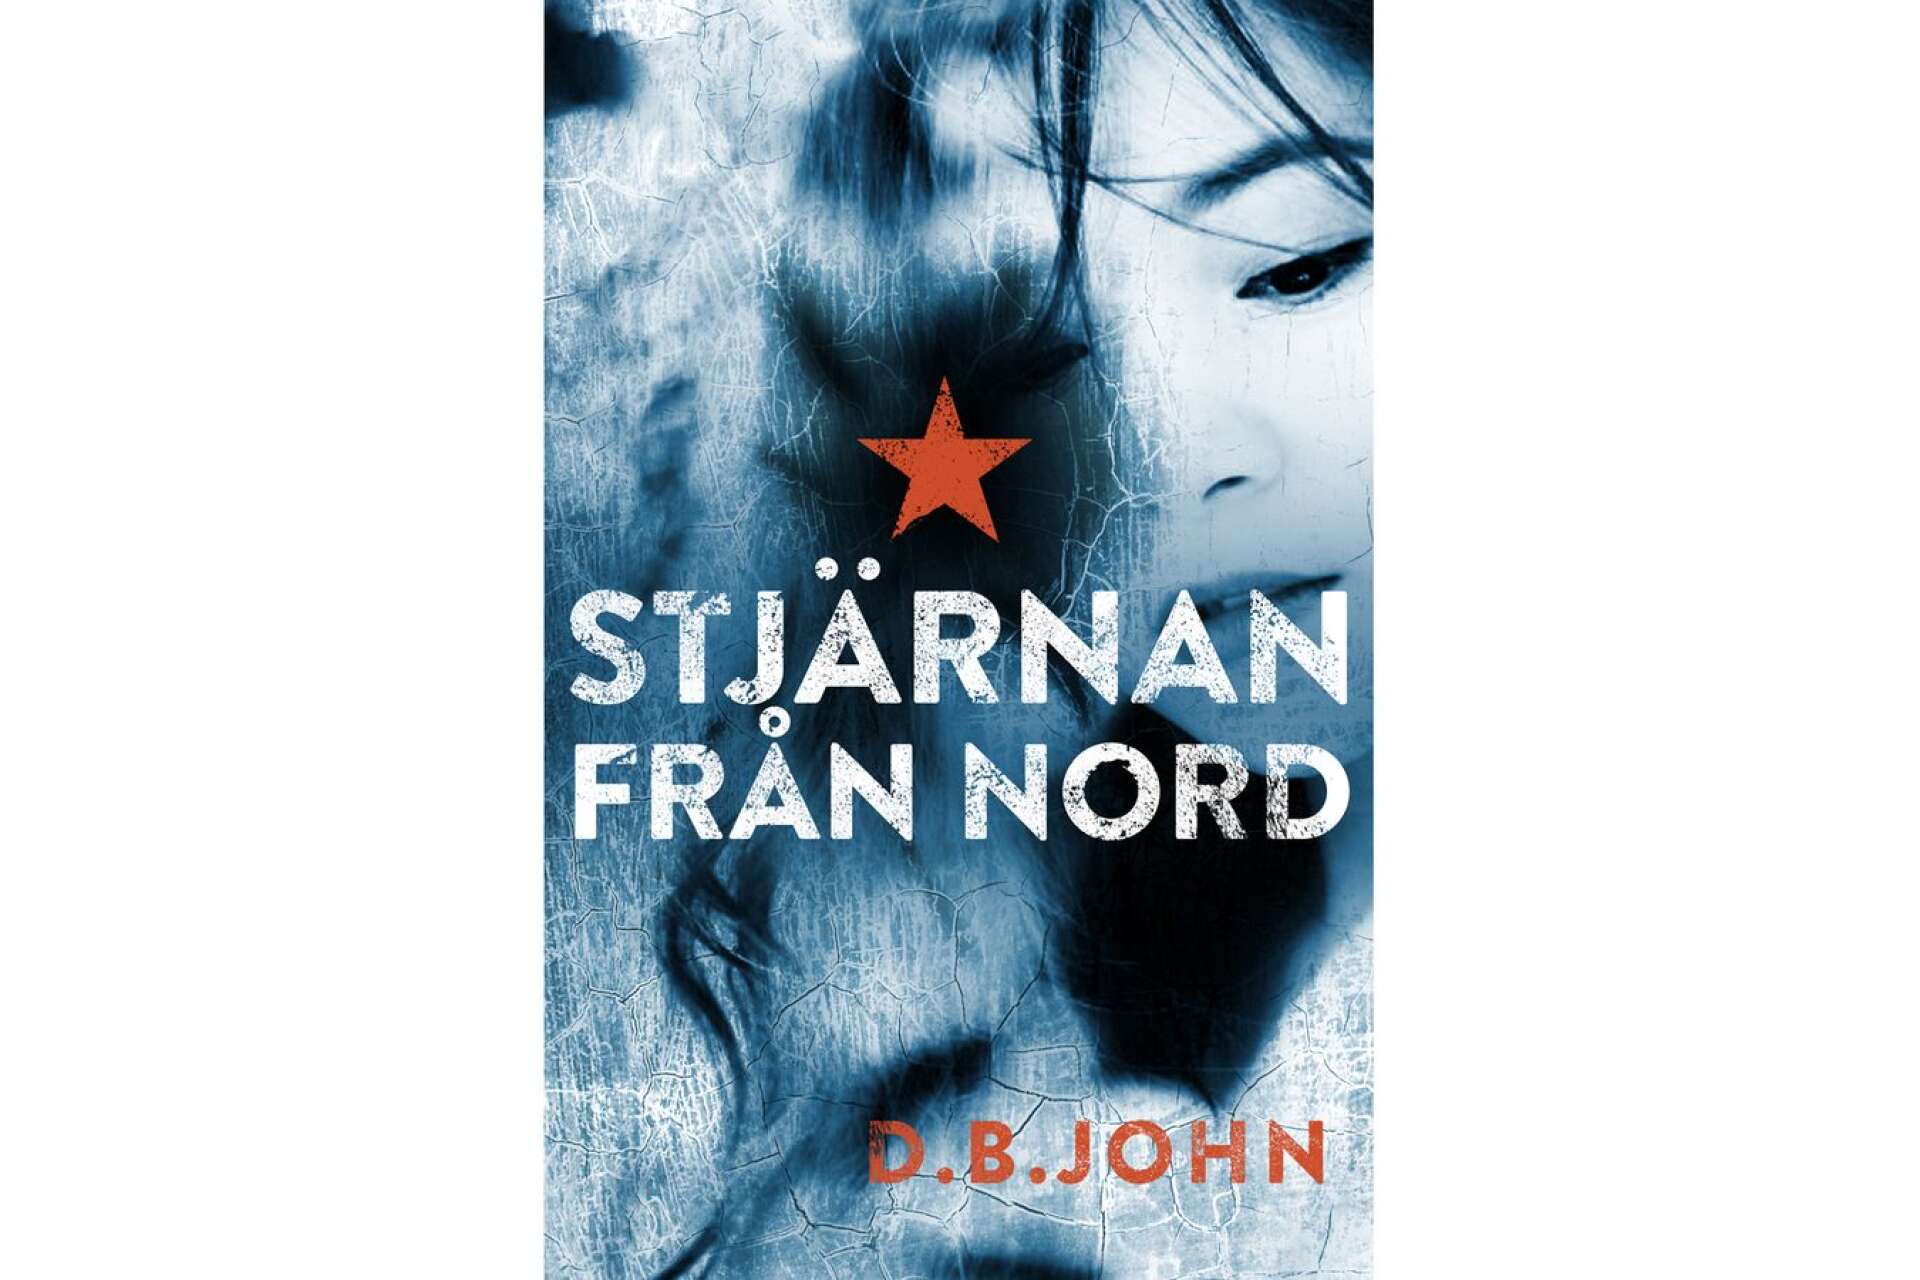 Titel: Stjärnan från Nord Författare: D.B. John Översättare: Birgitta Wernbro Augustsson  Förlag: Polaris